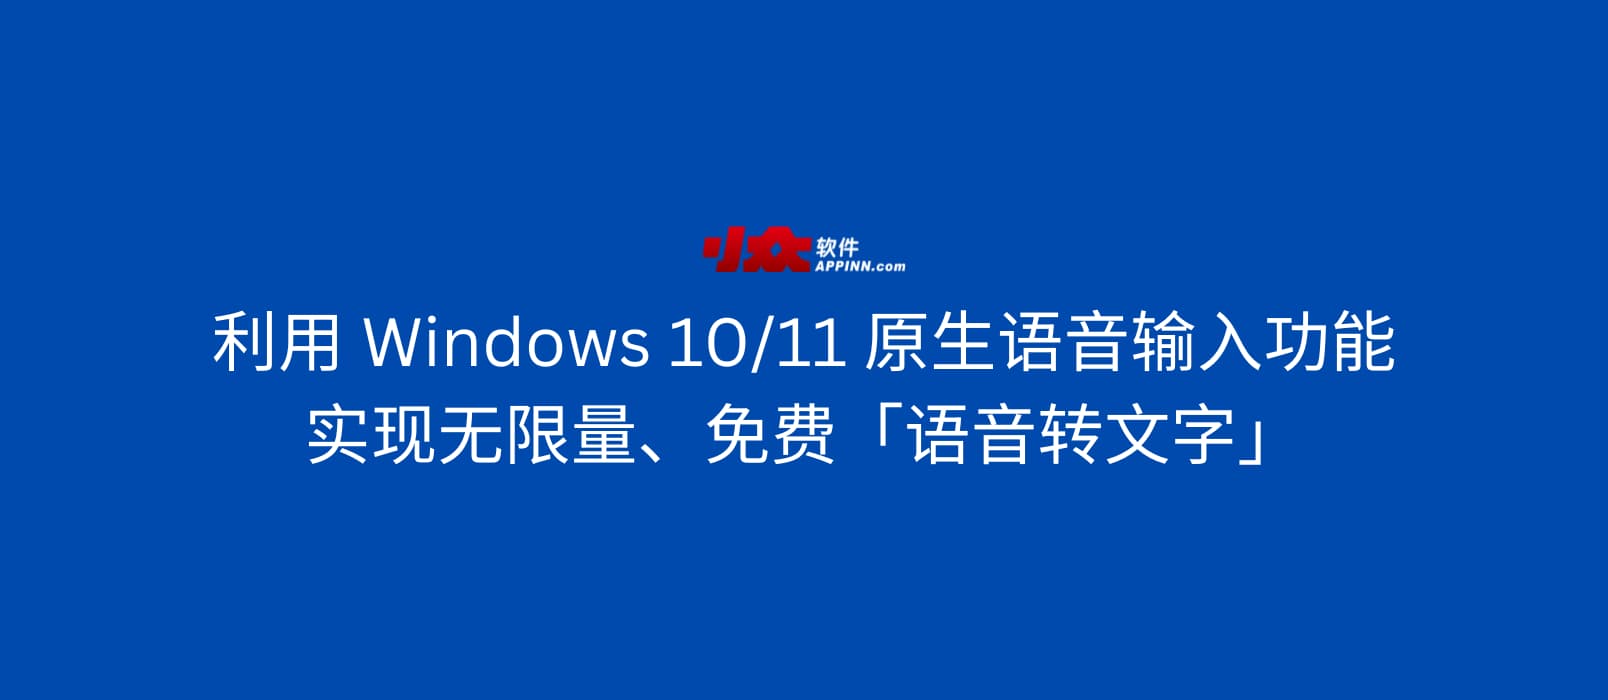 利用 Windows 10/11 原生语音输入功能，实现无限量、免费「语音转文字」